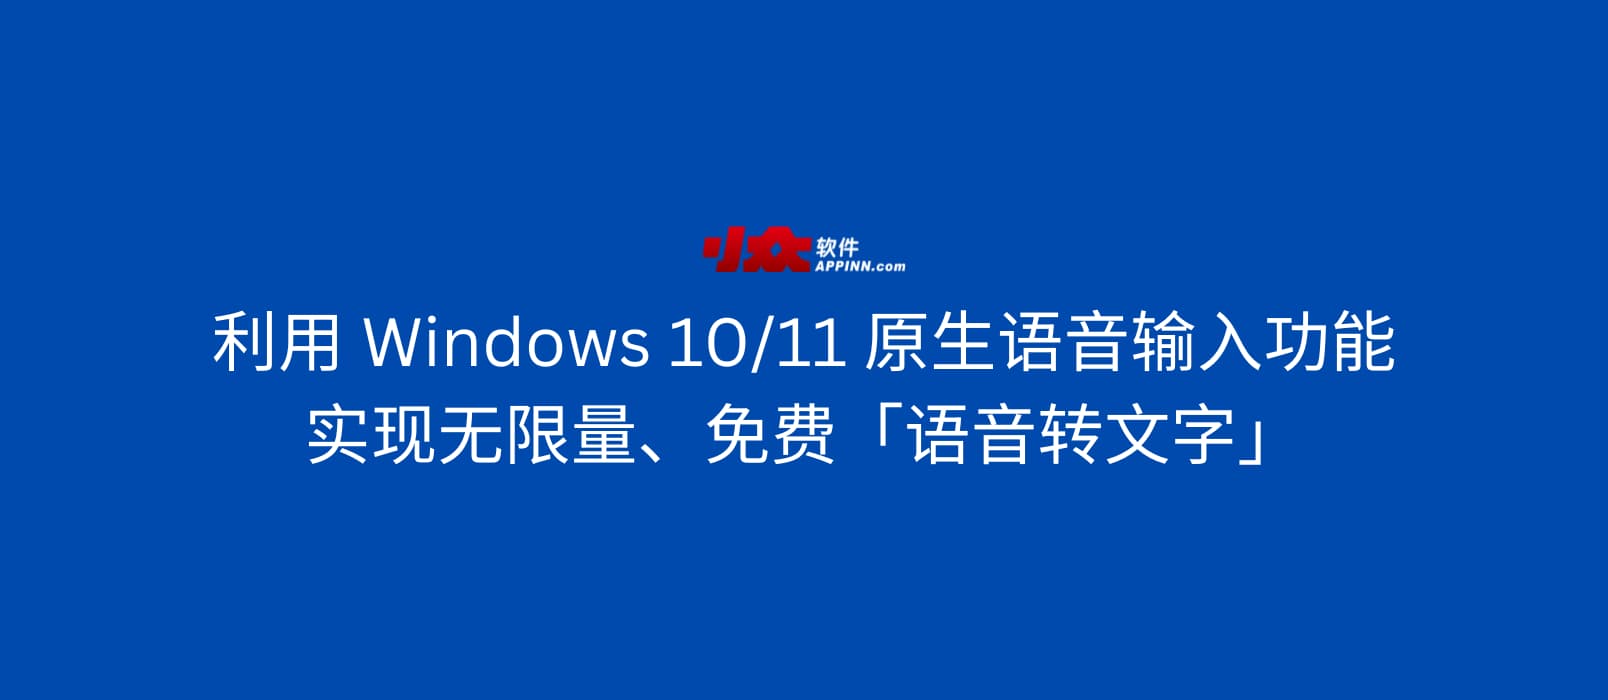 利用 Windows 10/11 原生语音输入功能，实现无限量、免费「语音转文字」